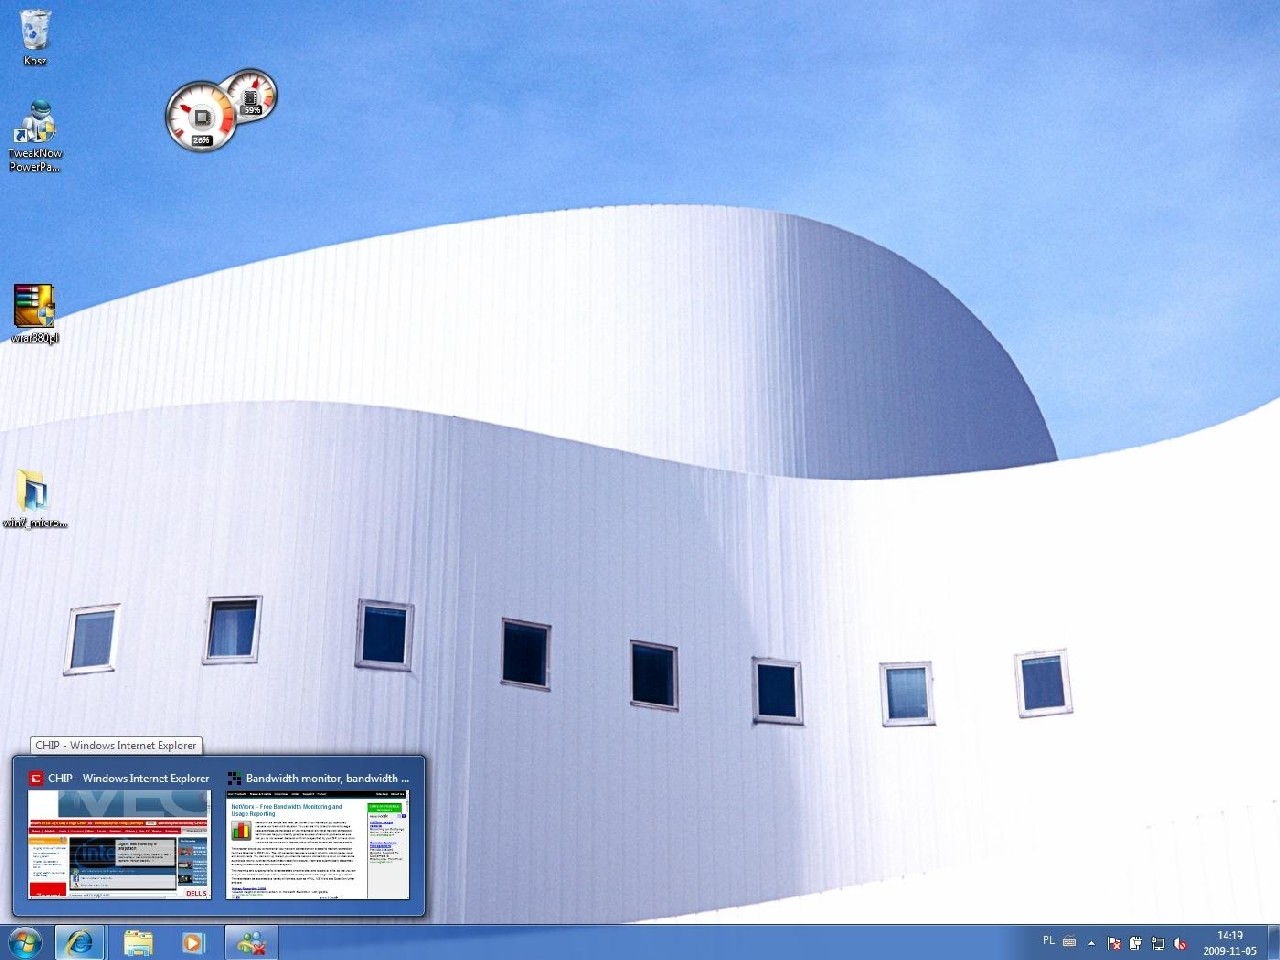 Windows 7 - nowy pasek zadań jest bardziej czytelny, nawet gdy otwartych jest wiele okien.